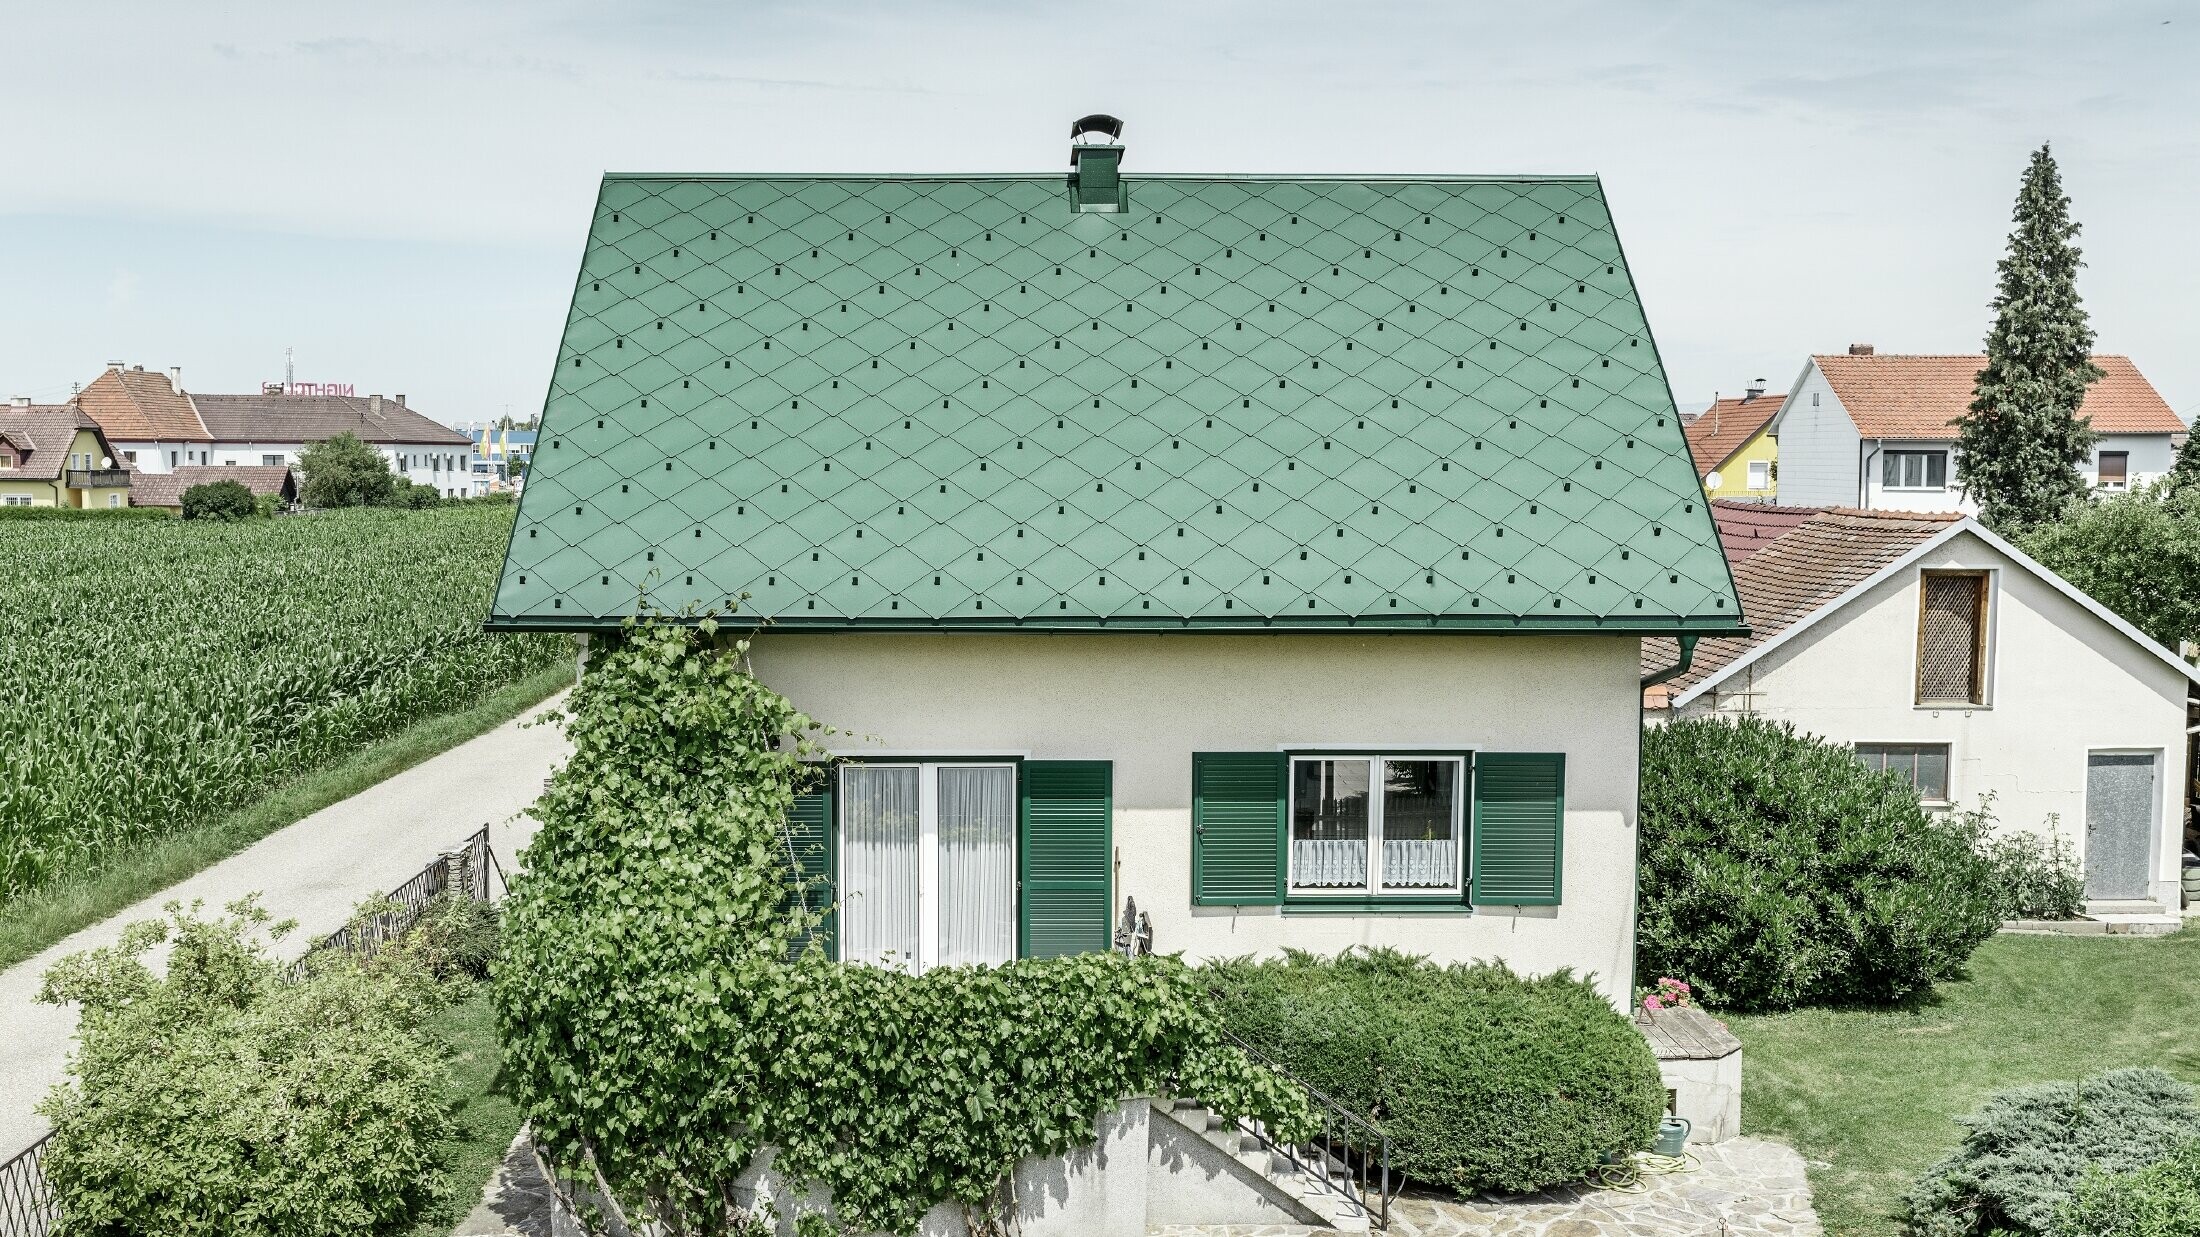 Klasična enodružinska hiša z dvokapno streho s strešno kritino iz aluminija PREFA v mahovo zeleni barvi z zelenimi polkni. Streha je bila izdelana s strešnimi rombi 44 × 44 PREFA v barvi P.10 mahovo zelena.